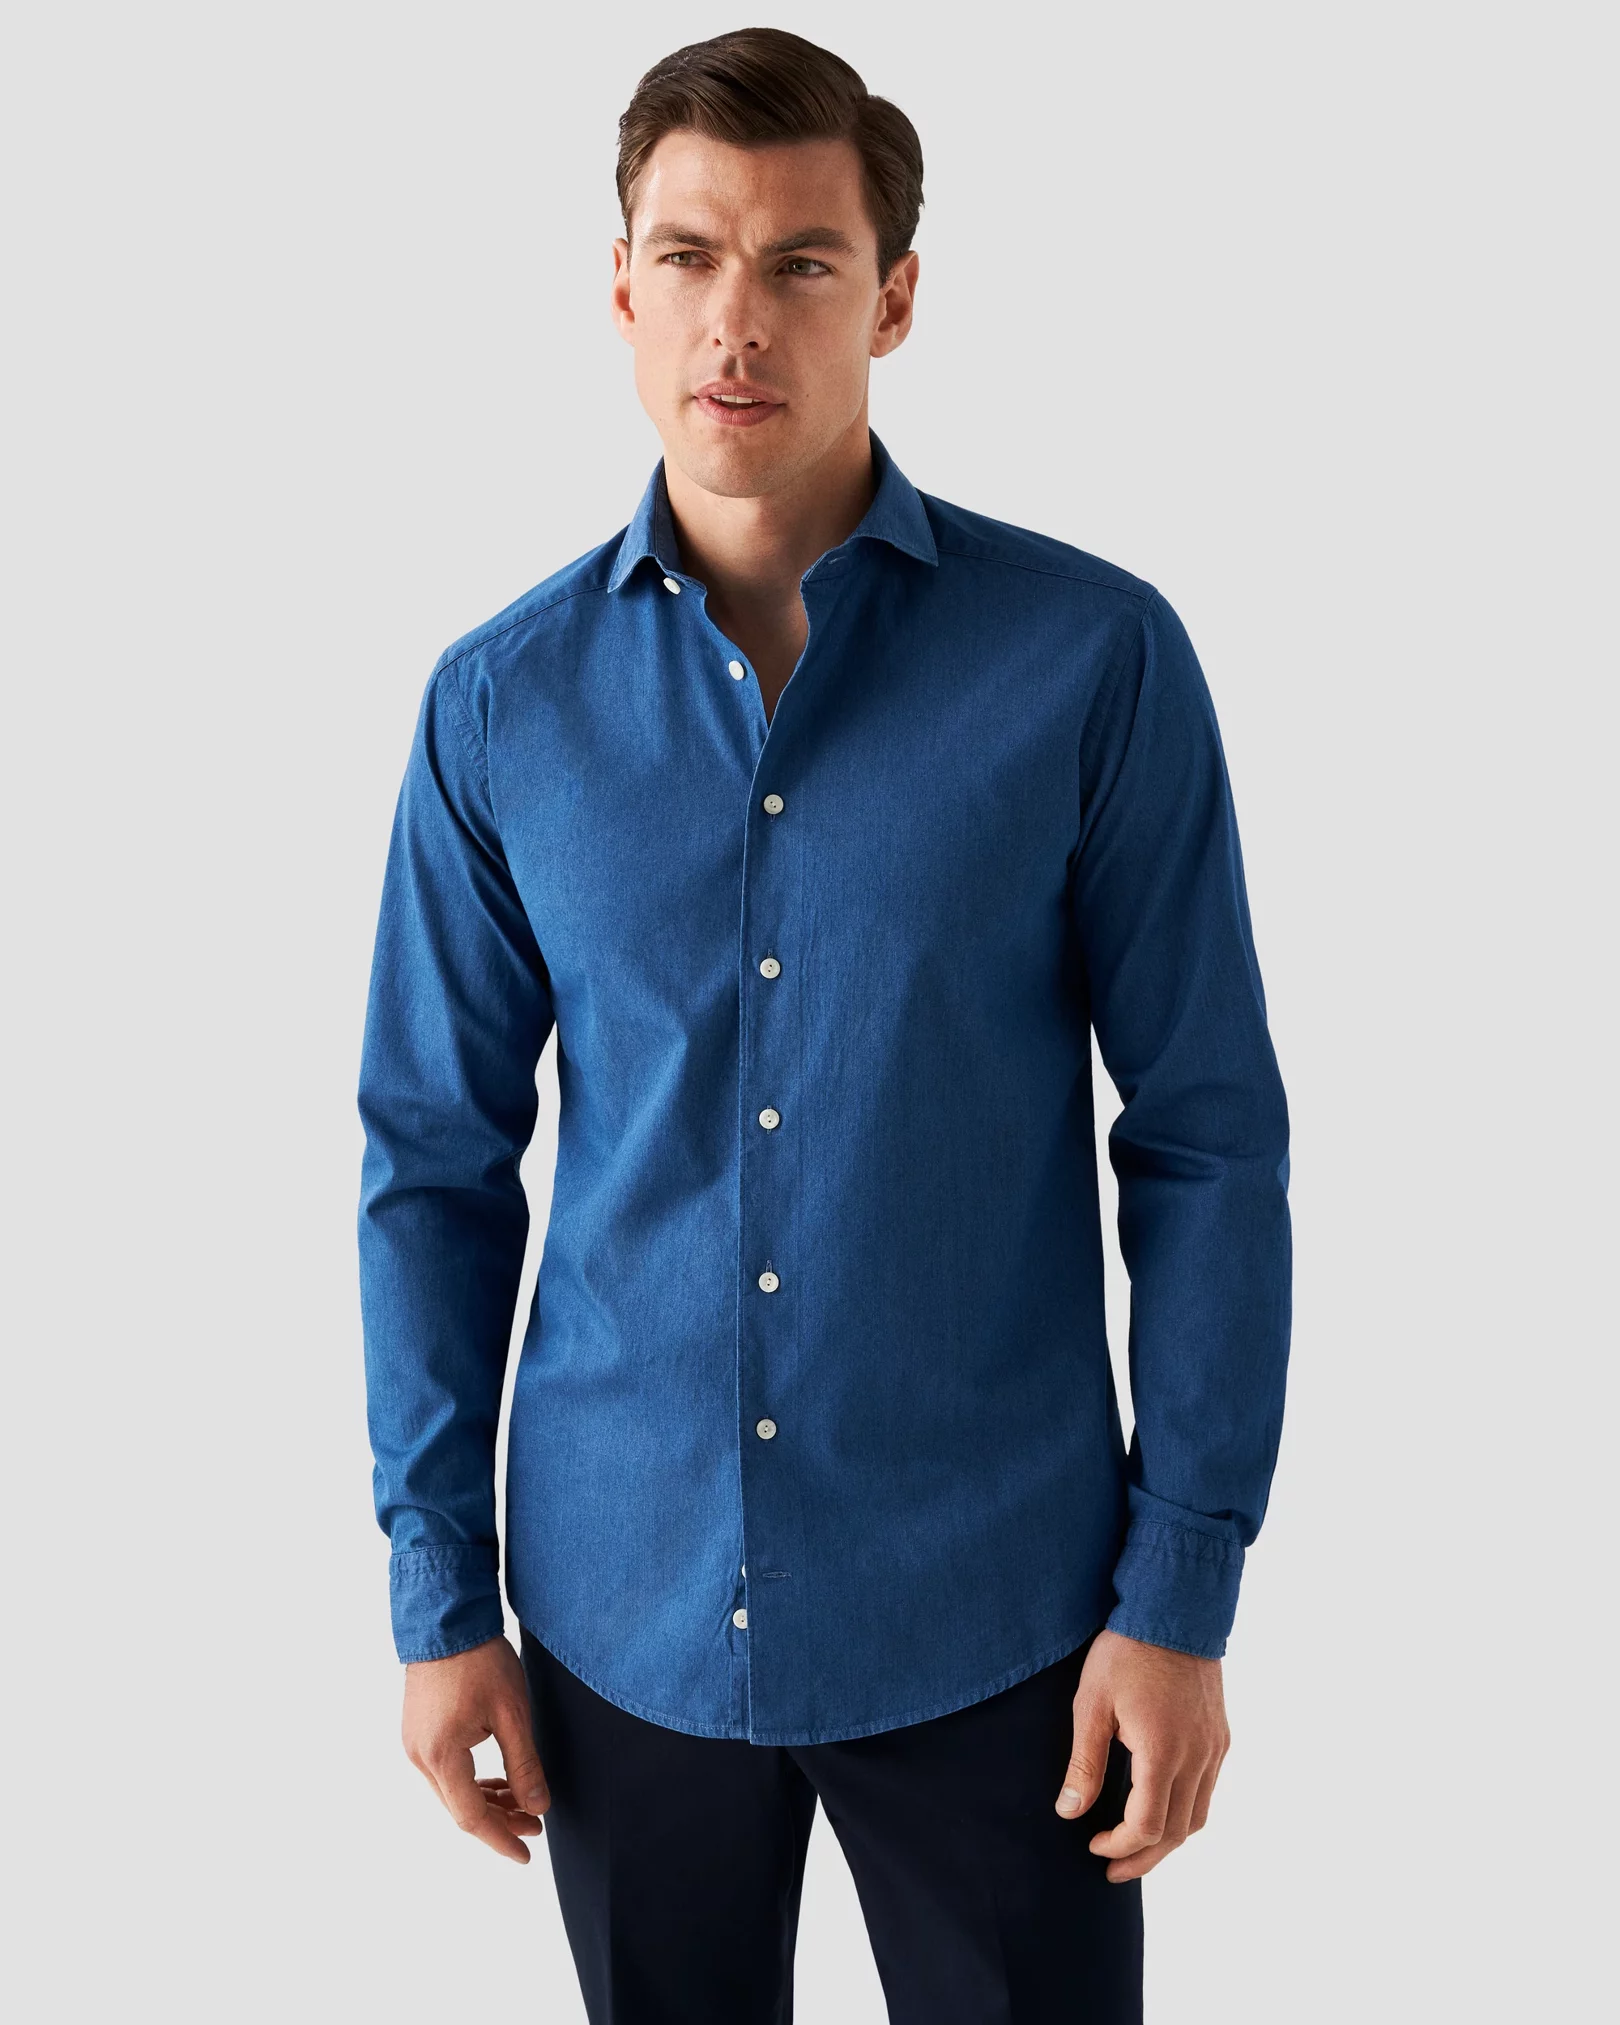 Eton - navy blue indigo wide spread collar